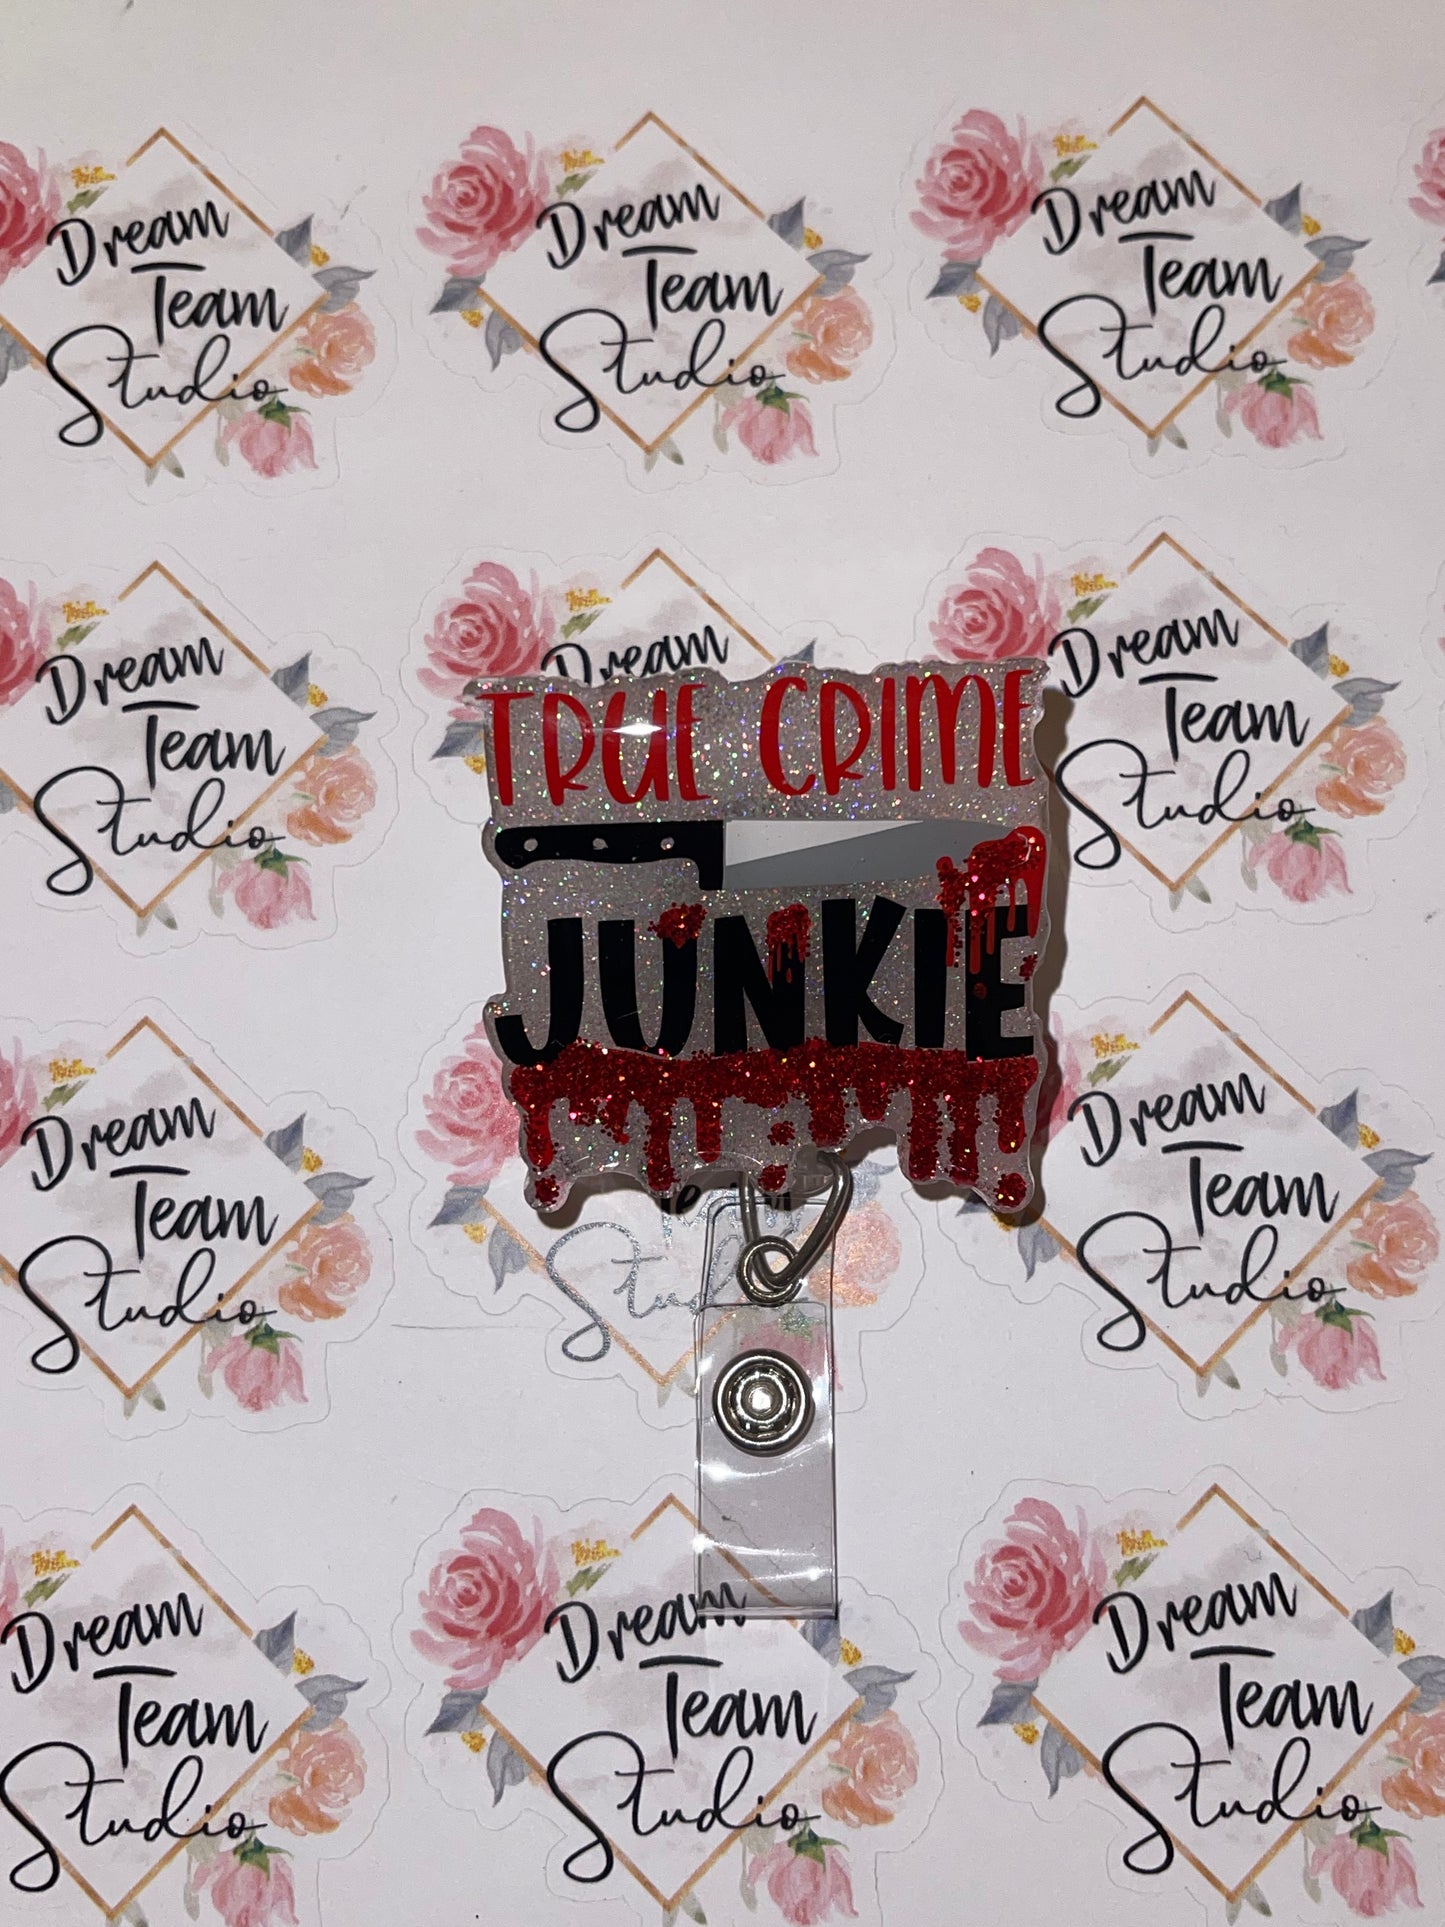 True Crime Junkie Badge Reel